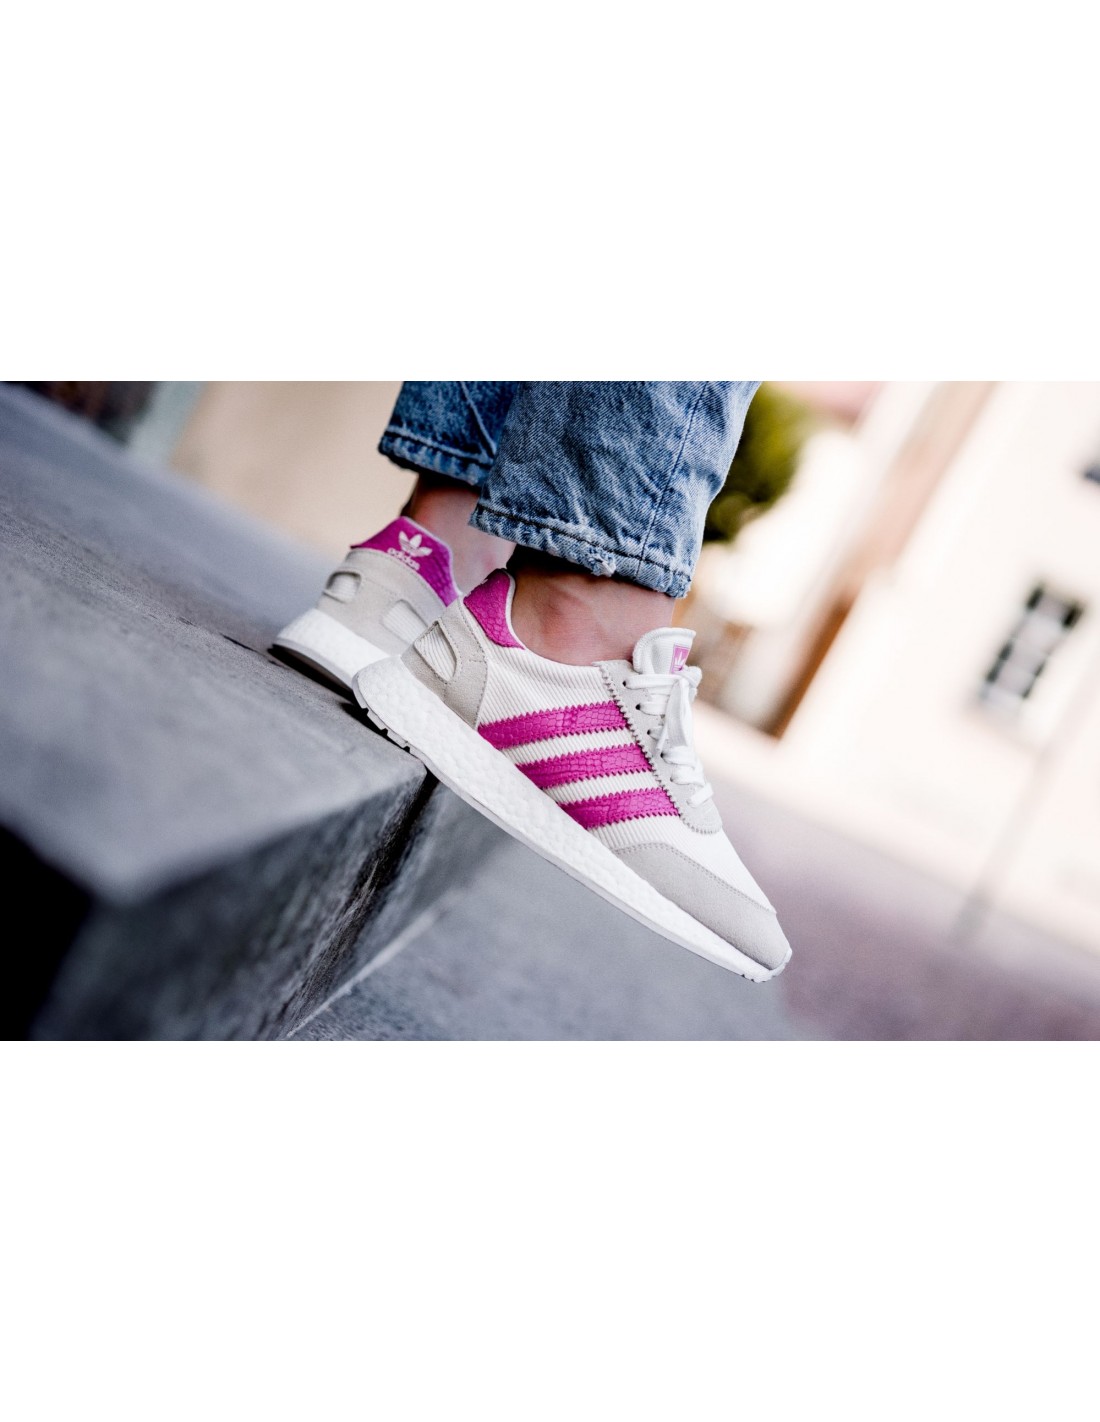 Adidas Originals I-5923 W white pink D96618 |urbanfashion.gr